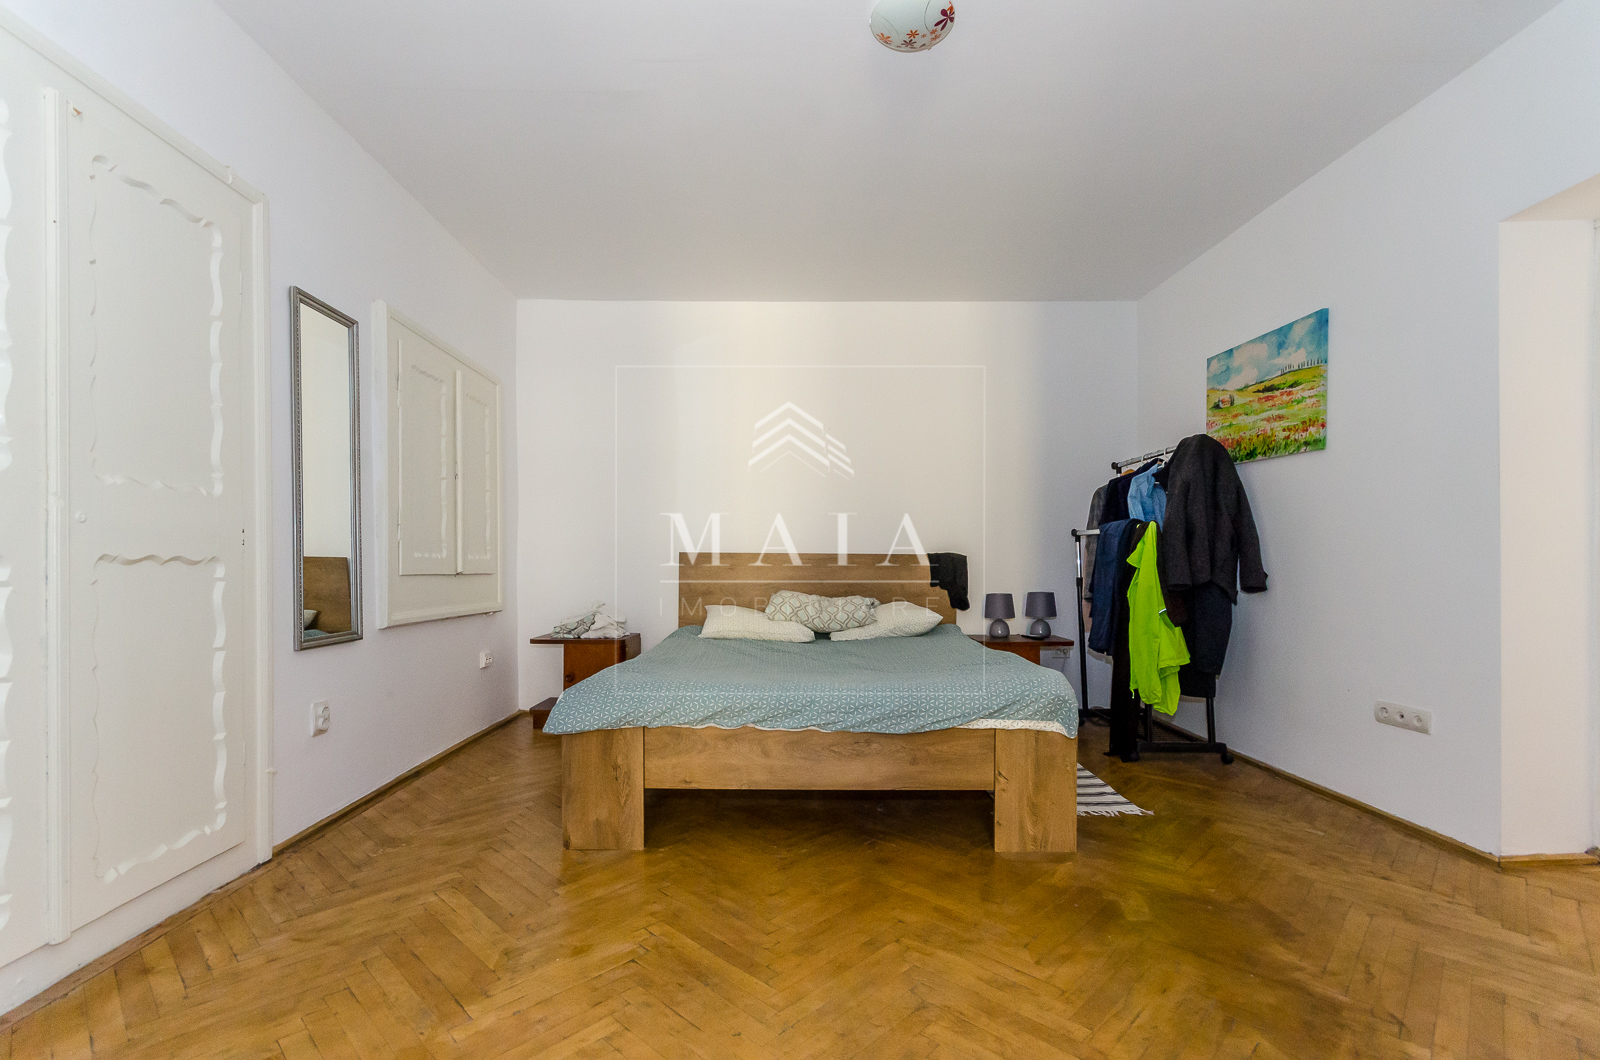 Apartament 2 camere, la 170 mp de Piata Mare, mobilat, pivnita, teren aferent